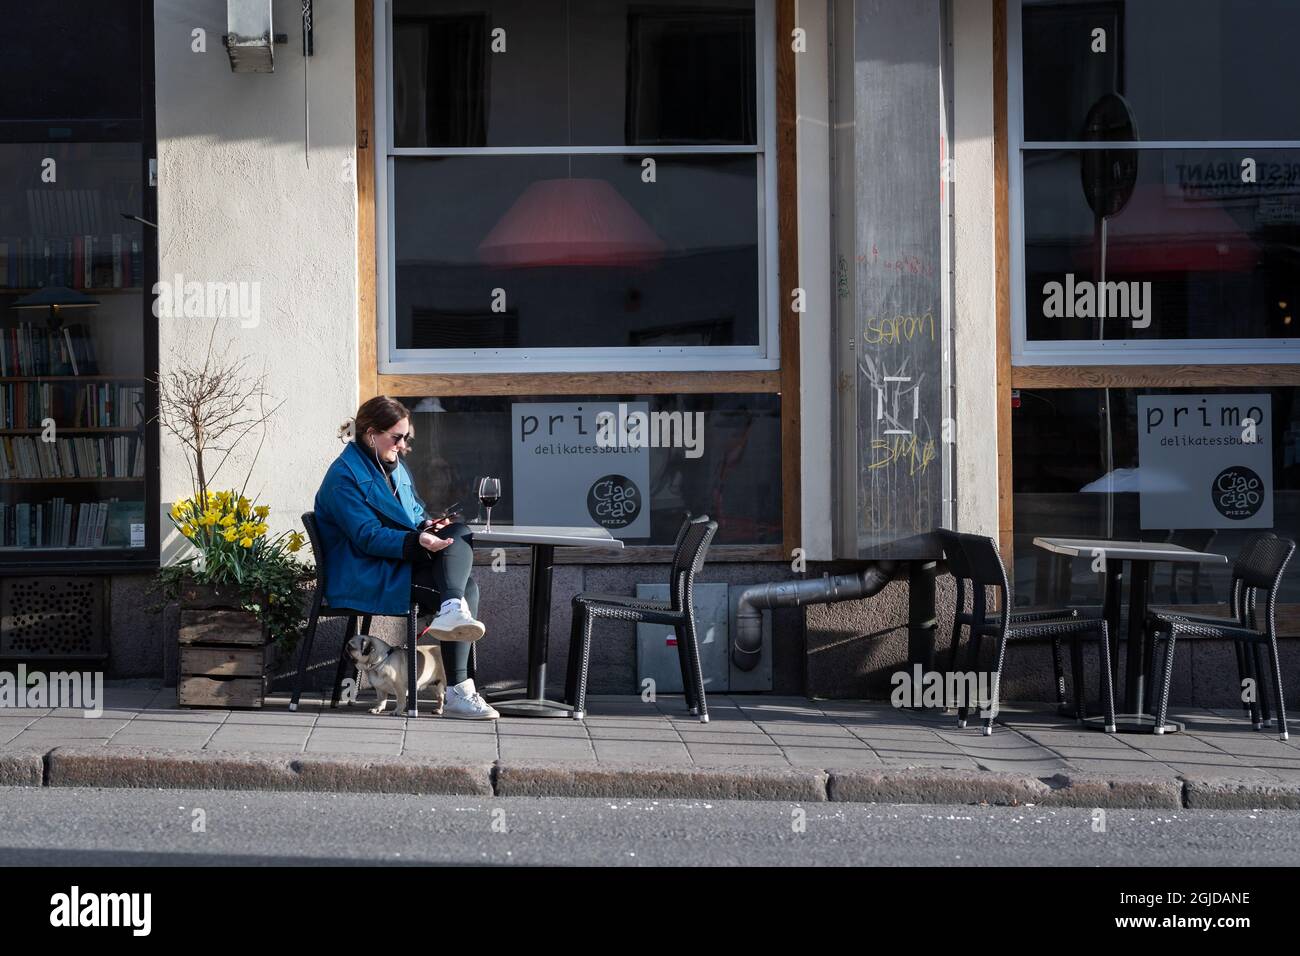 Une femme prenant un verre de vin à une table devant un restaurant à Sodermalm, Stockholm, Suède, 17 avril 2020, pendant la pandémie du coronavirus. Photo: Stina Stjernkvist / TT code 11610 Banque D'Images